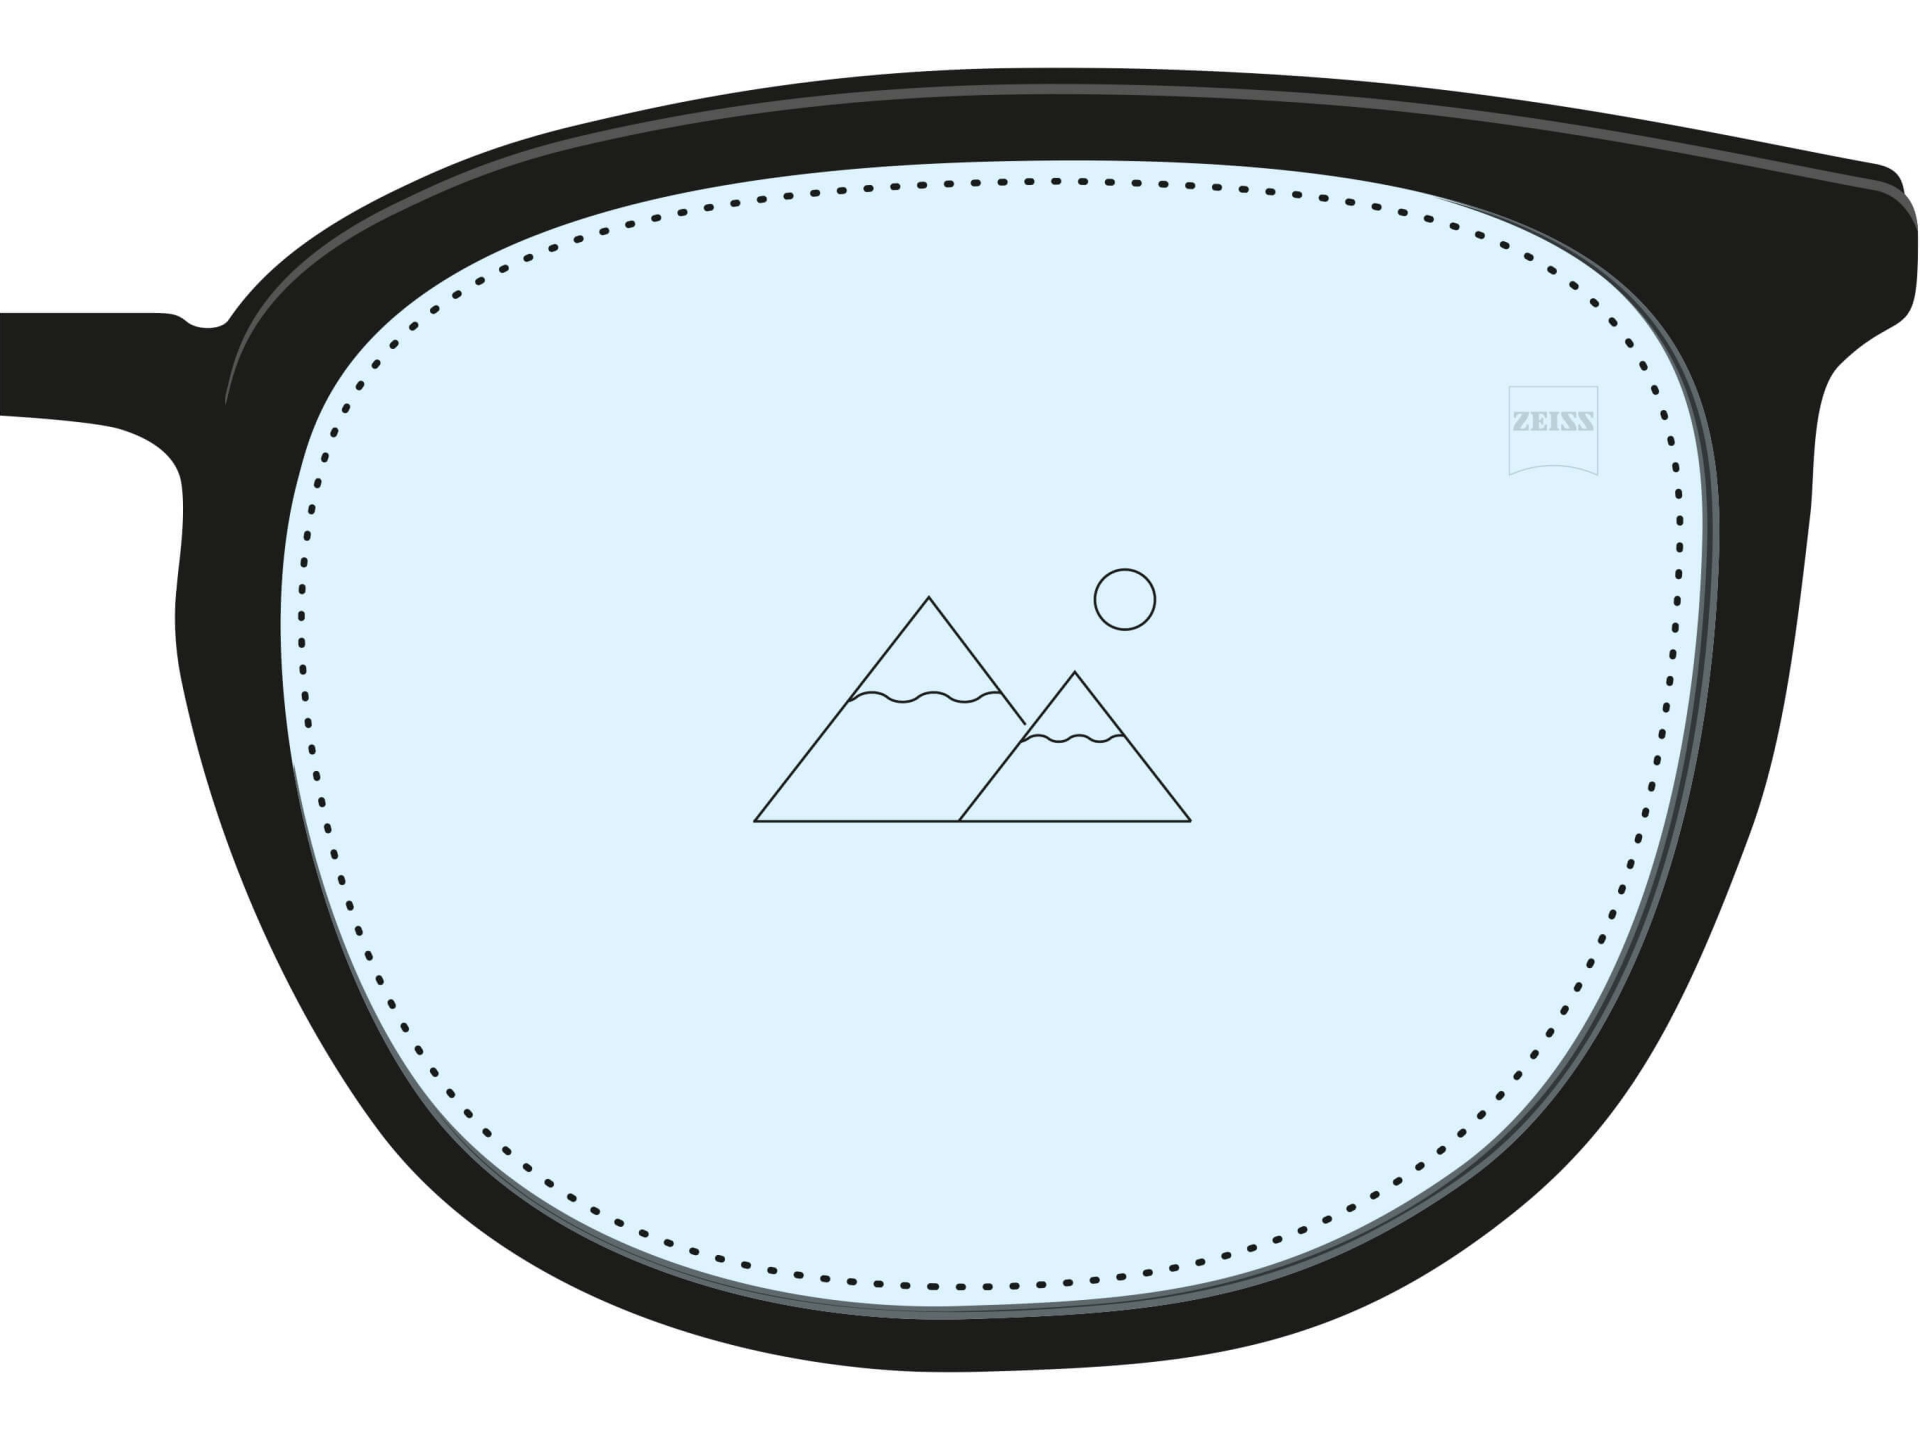 Une illustration d’un verre unifocal. Il est entièrement rempli d’une couleur bleue avec une seule icône qui montre qu’il ne corrige qu’une seule distance.